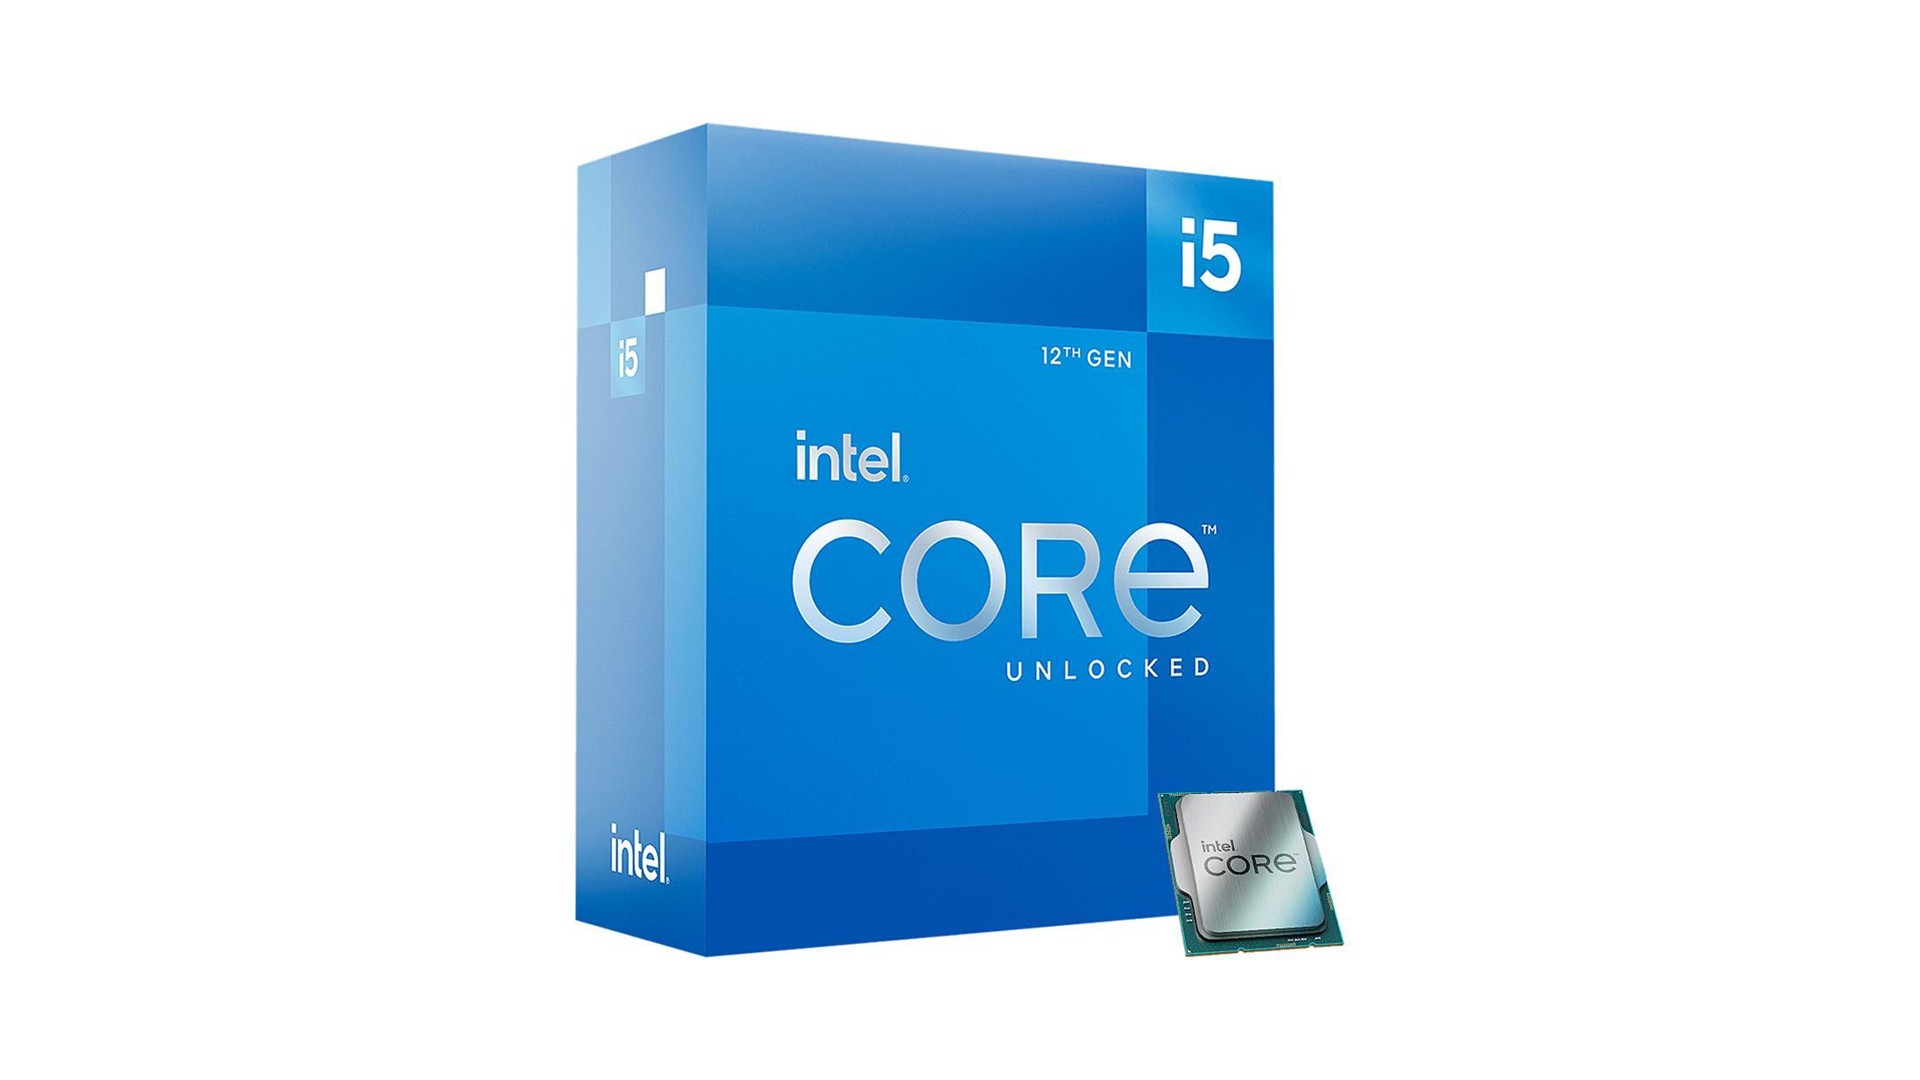 Intel AMD CPU deals 12700k 12600k 5600x sale price Ryzen Alder Lake